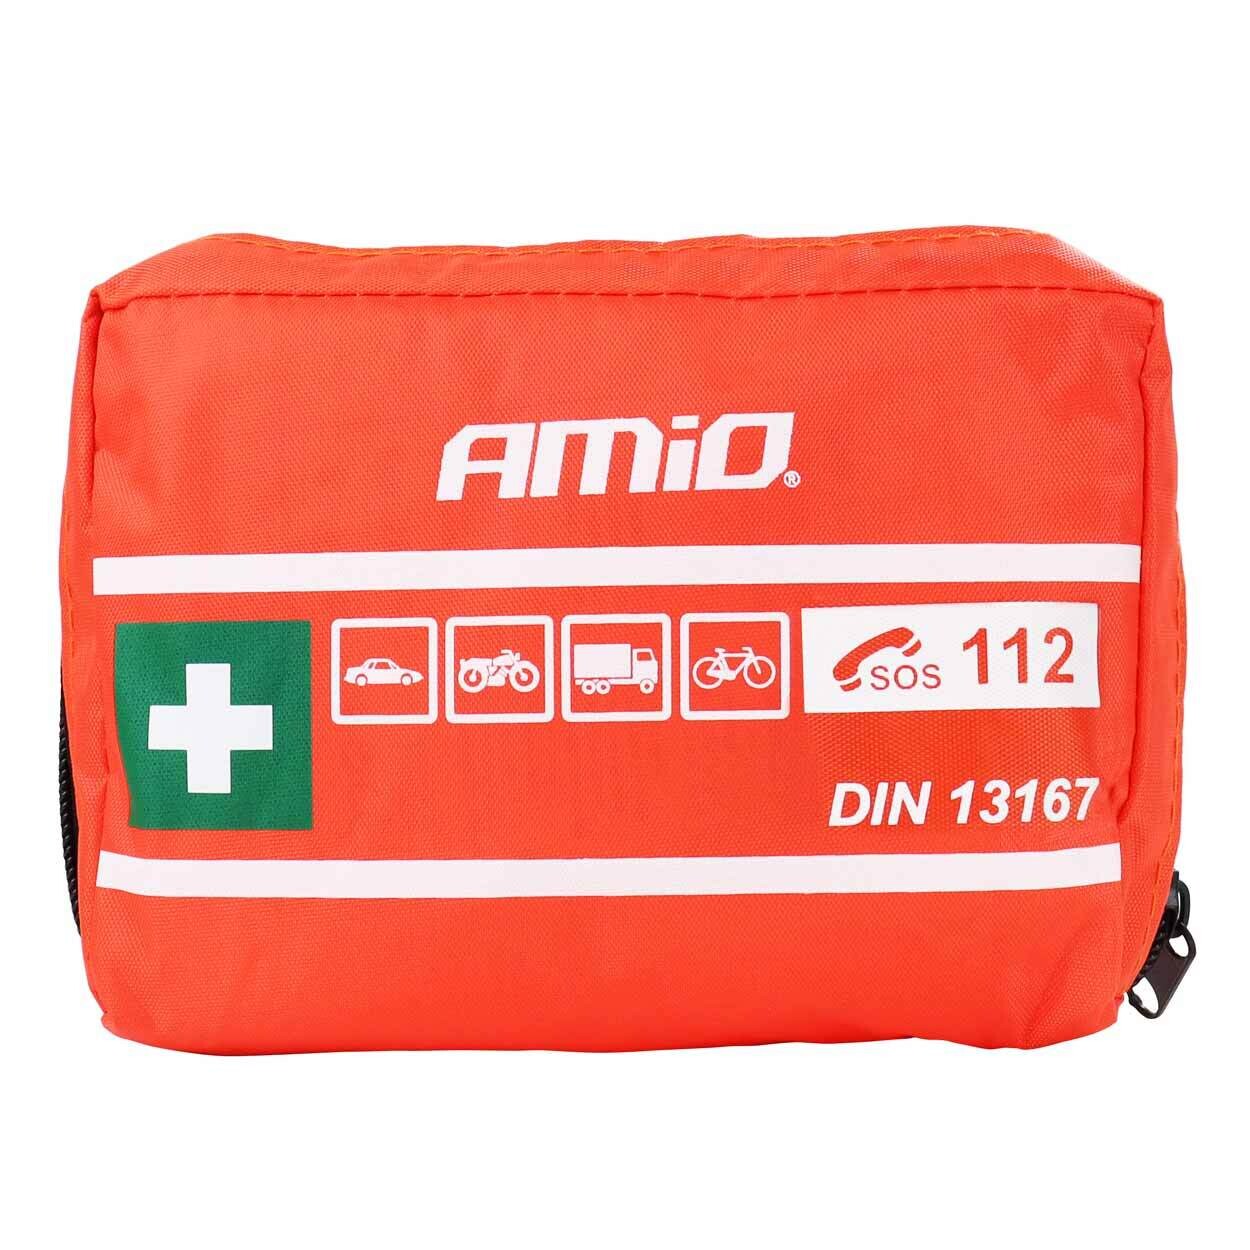 DIN 13167 mini first aid kit